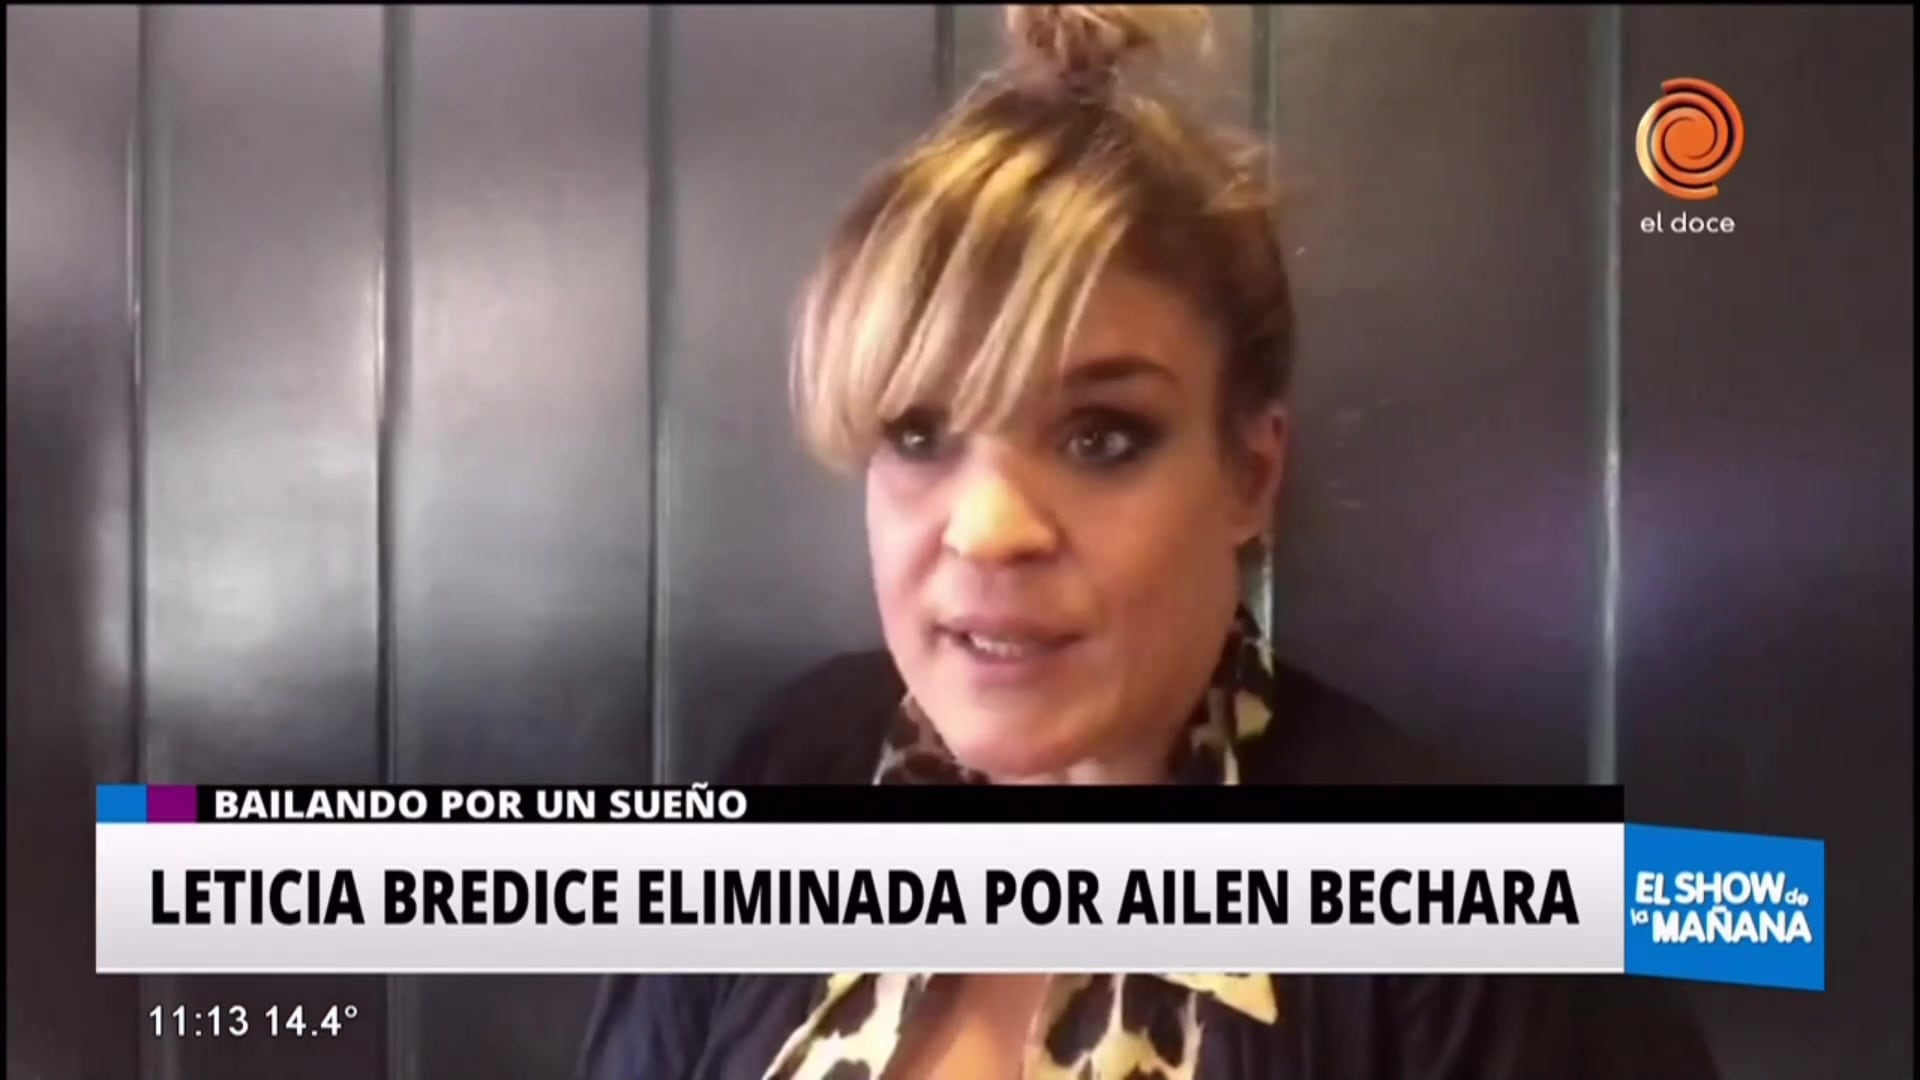 Leticia Bredice fue eliminada por Ailen Bechara